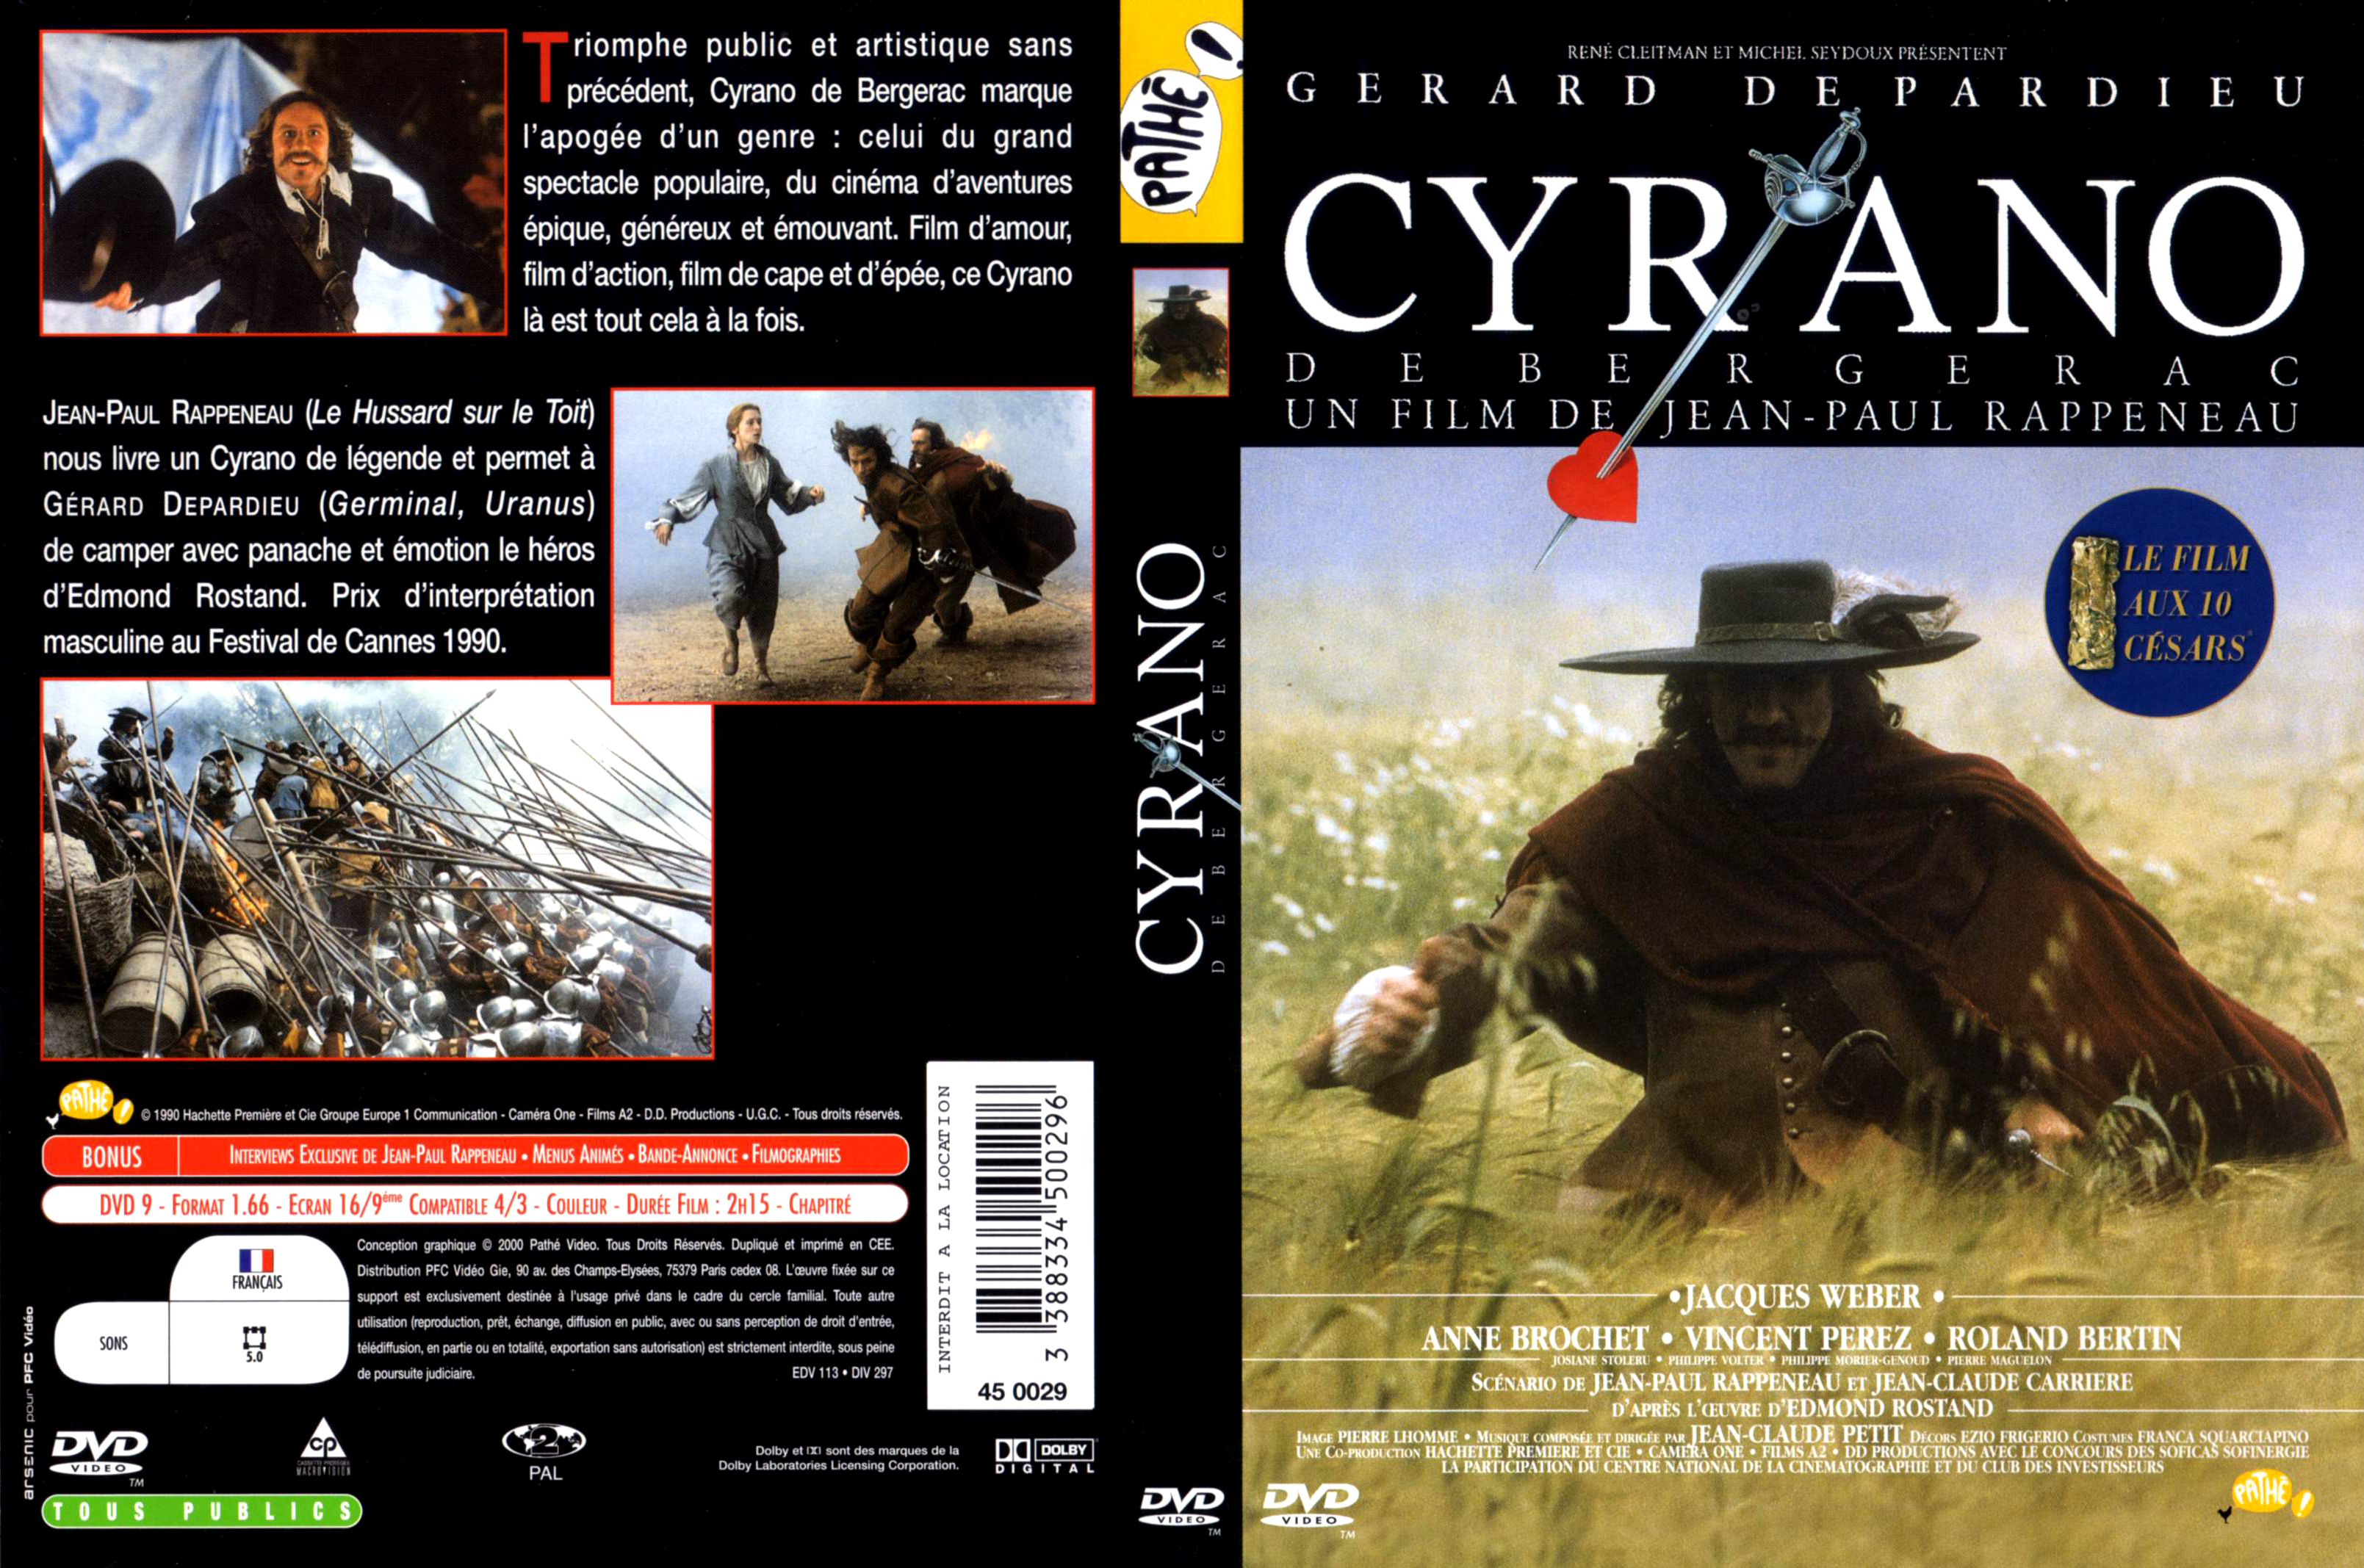 Jaquette DVD Cyrano de Bergerac v2